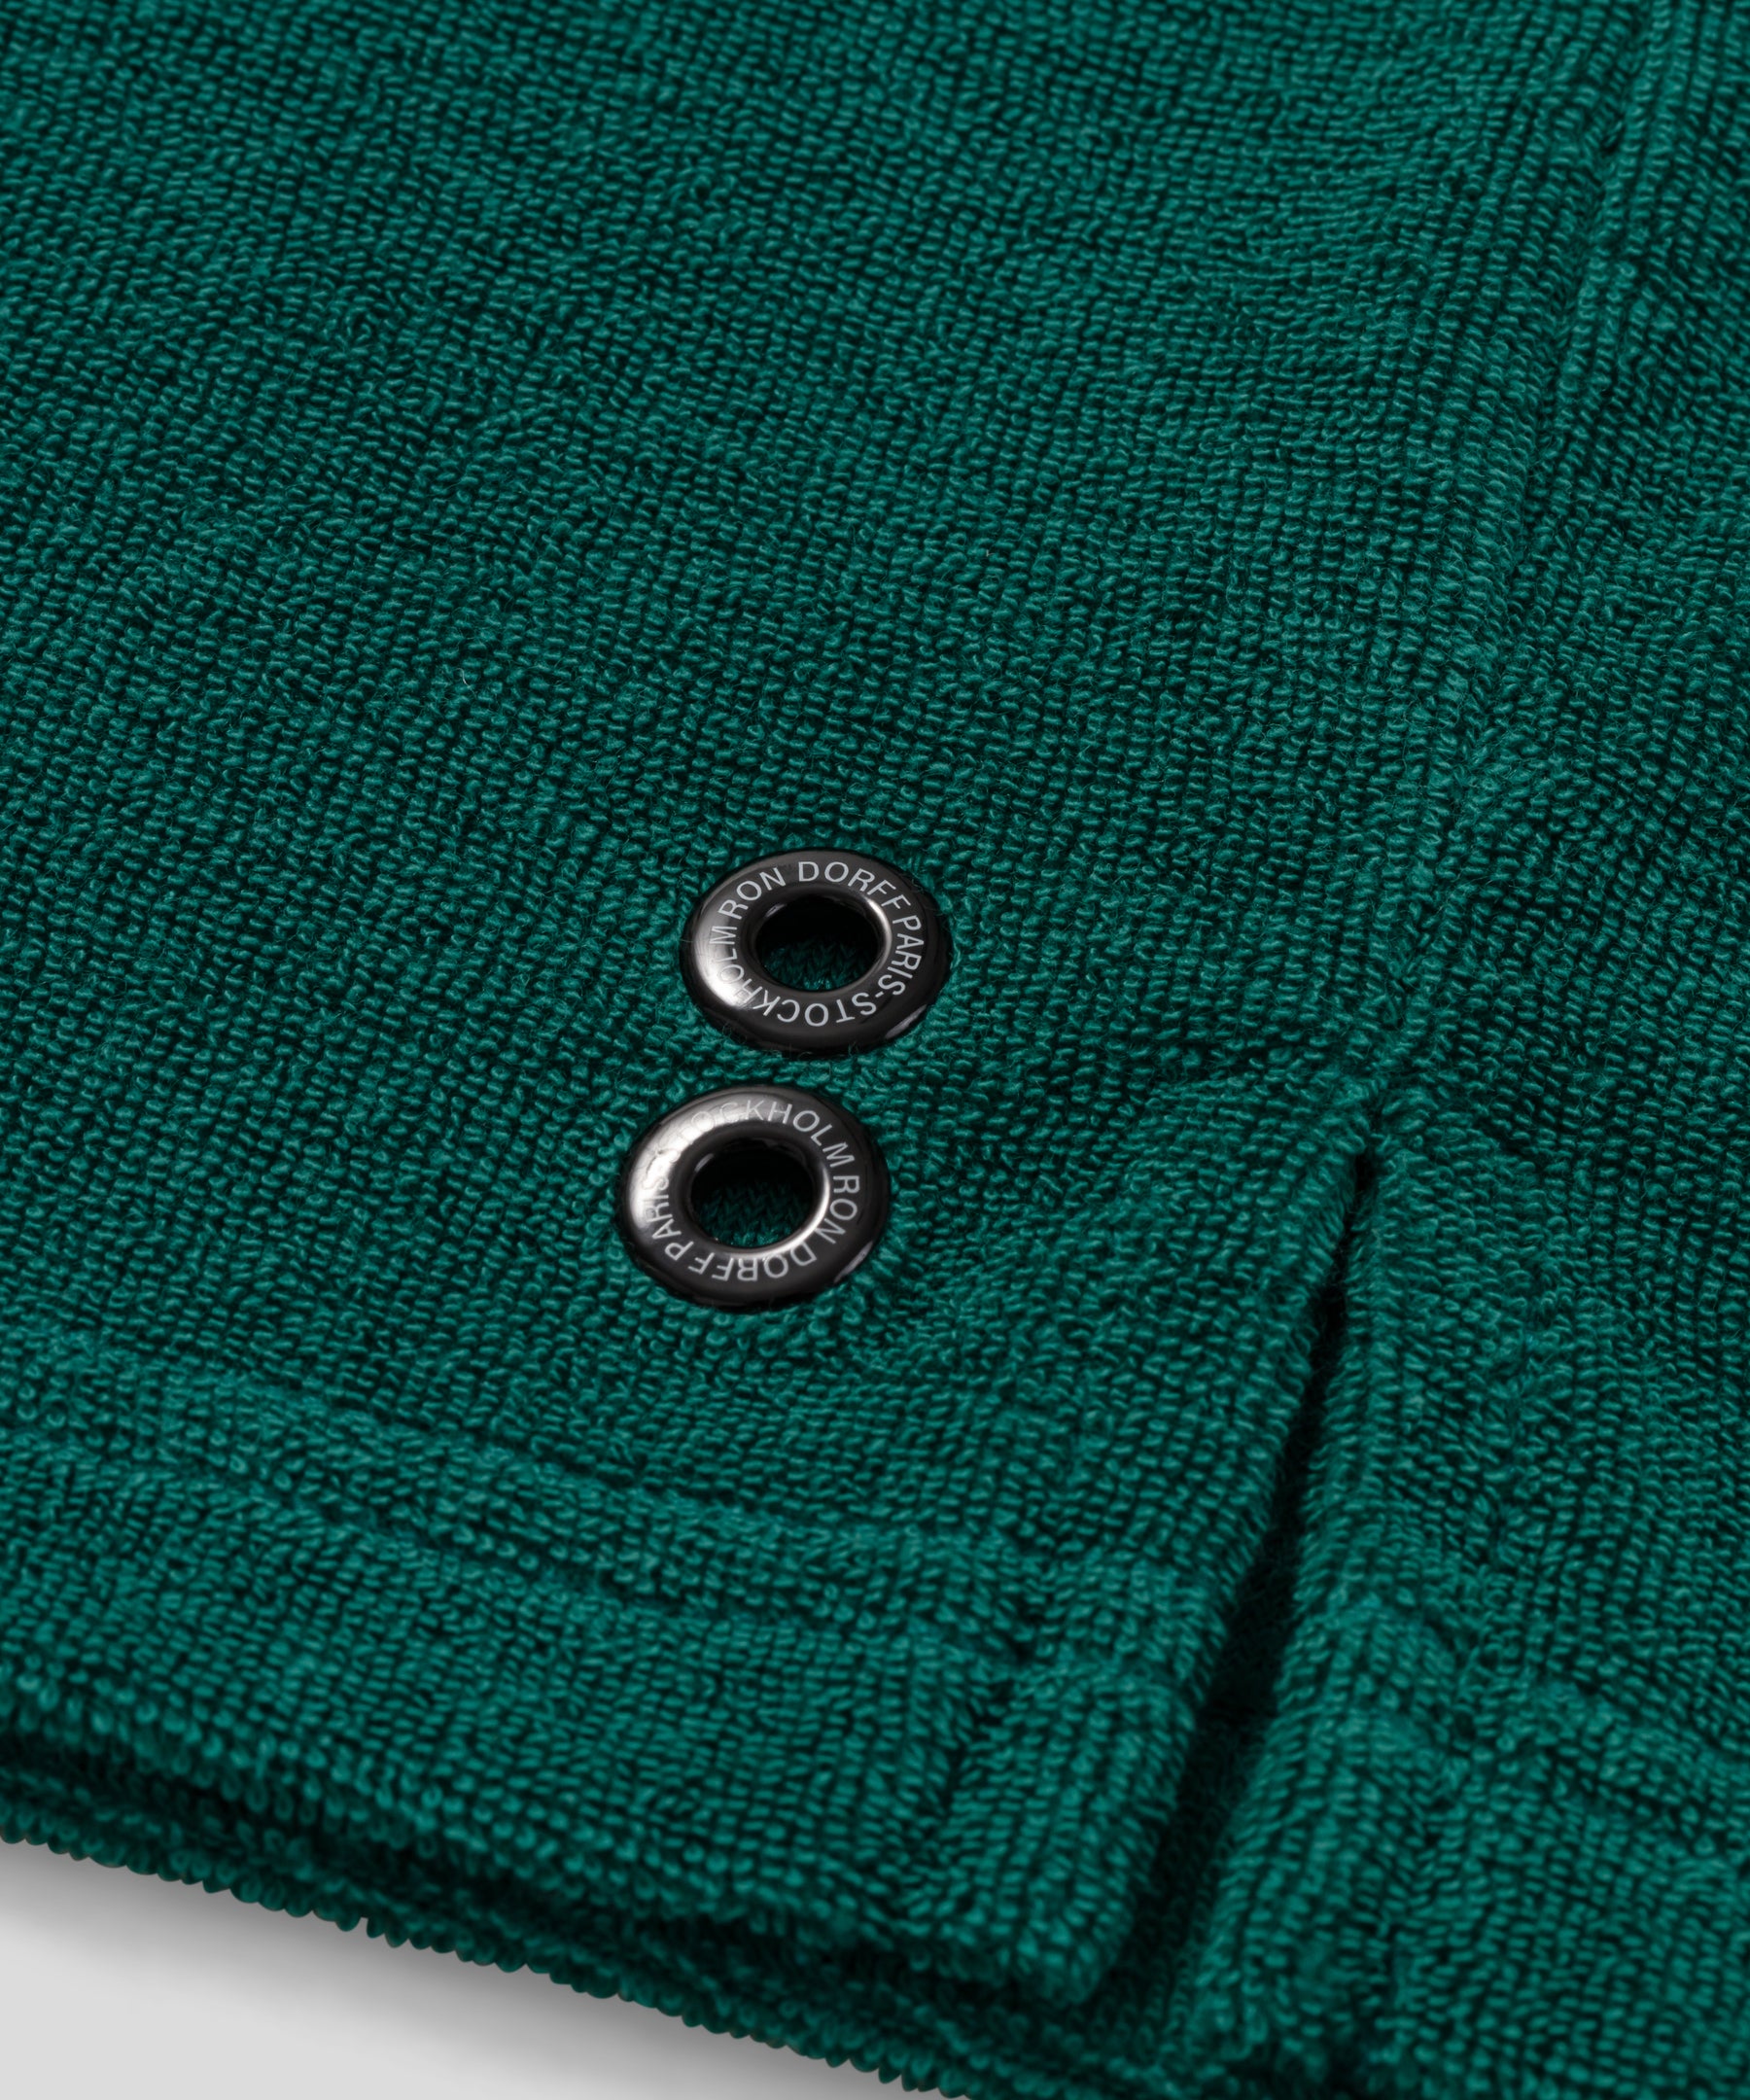 Polo en coton terry: Vert pin